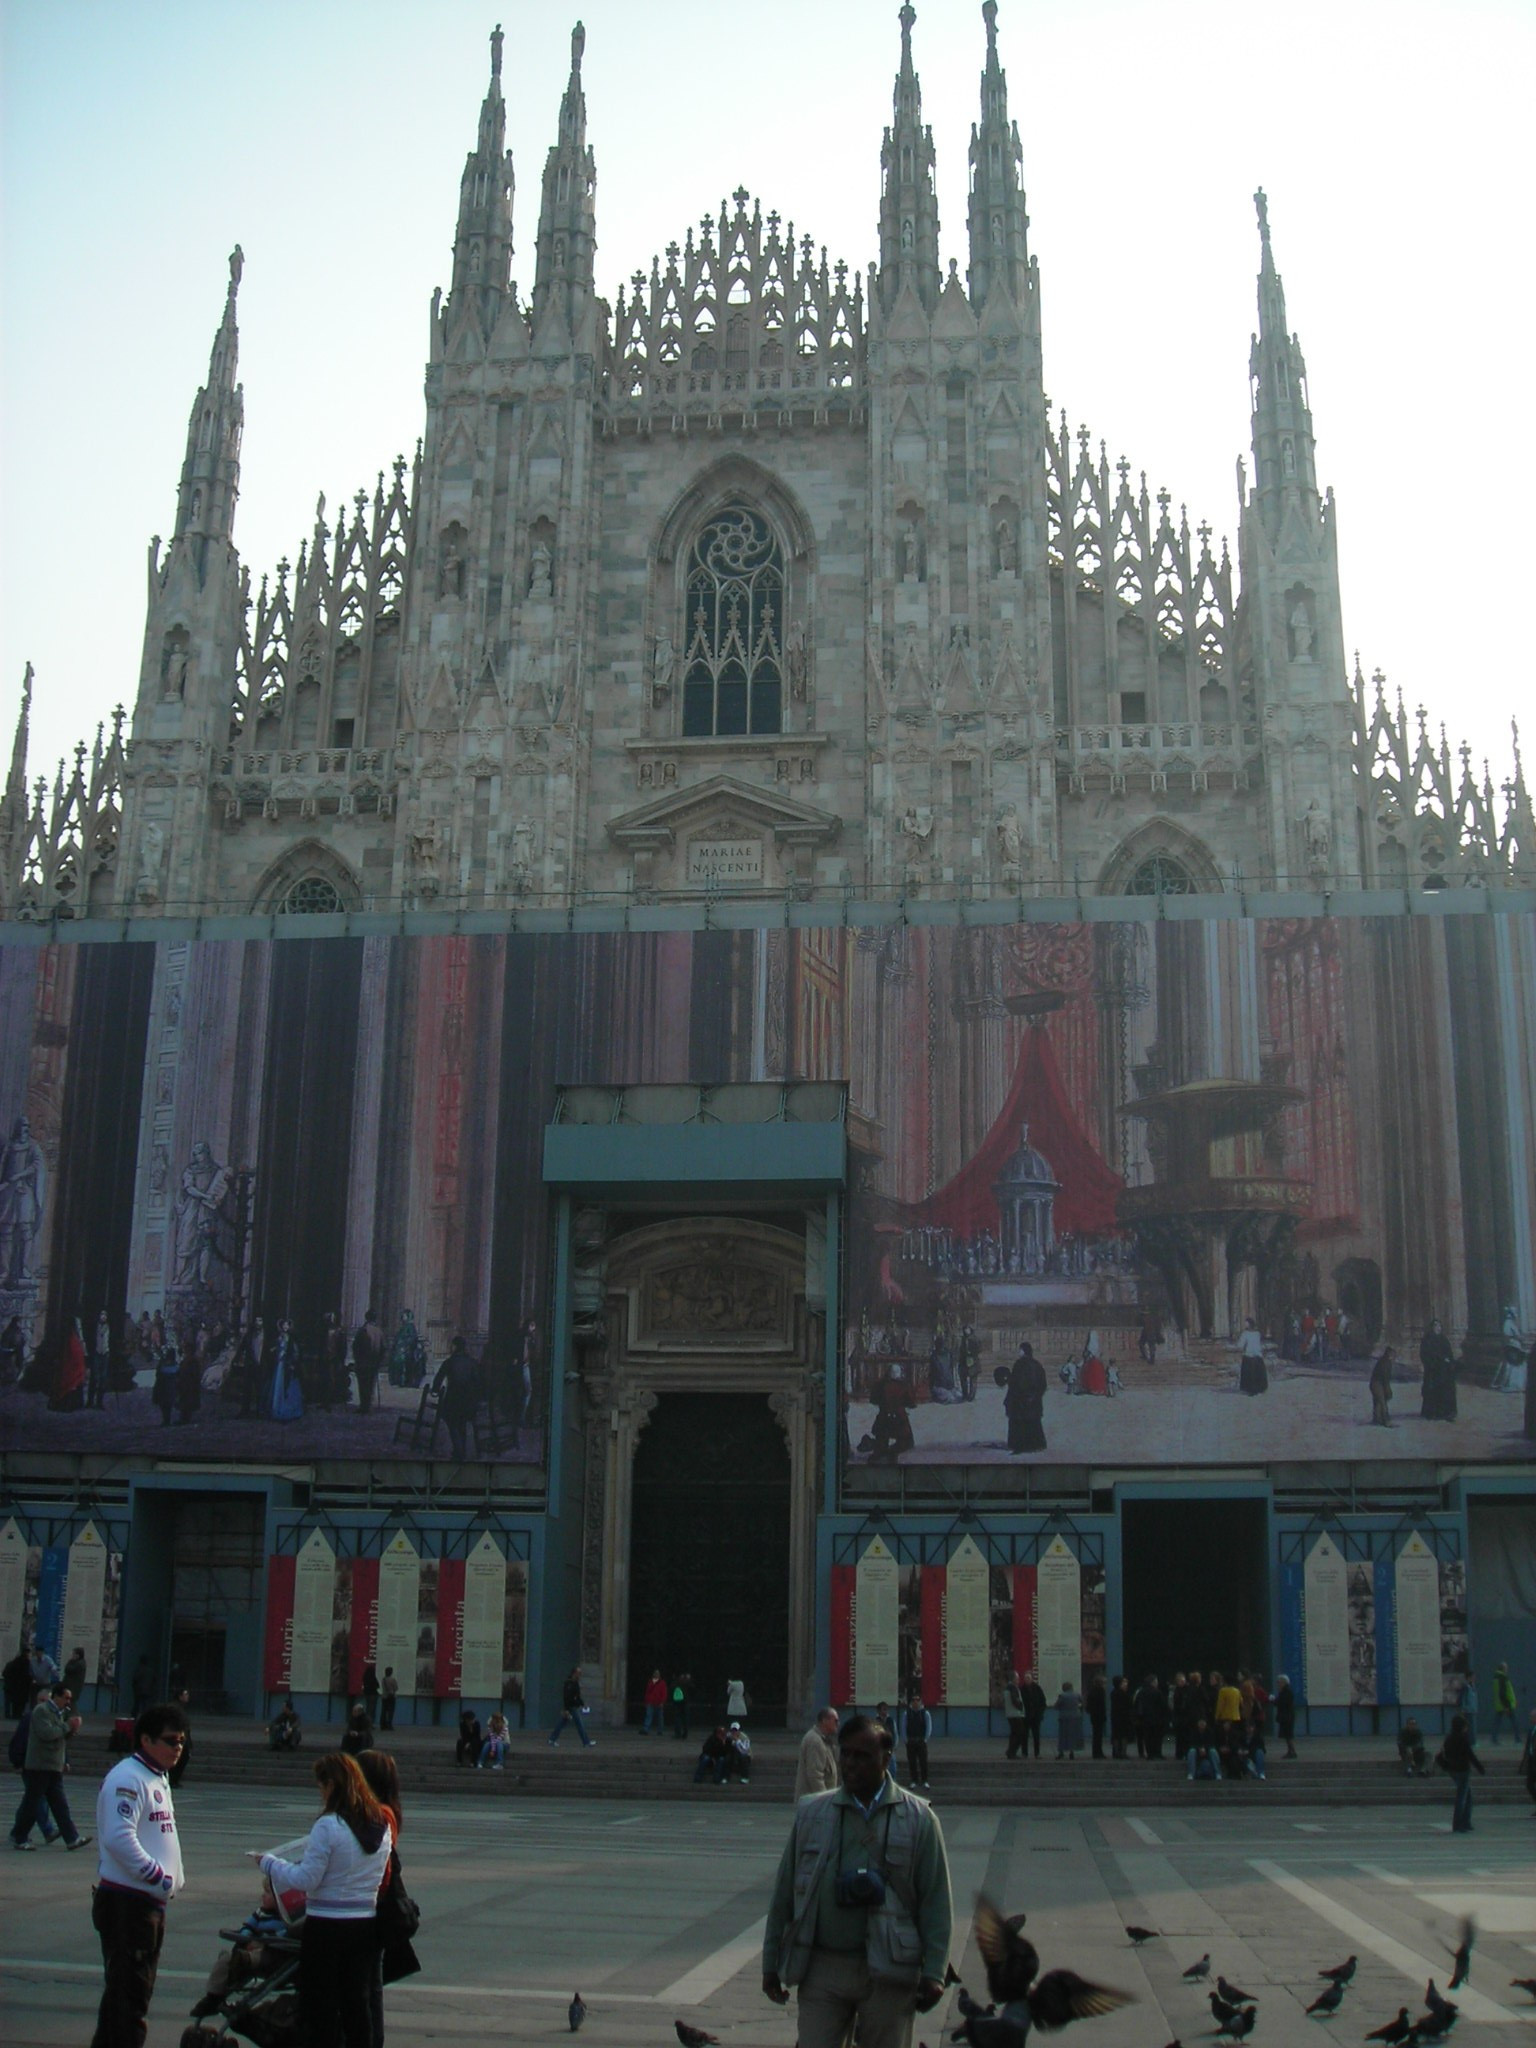 Duomo di Milano<br/>
